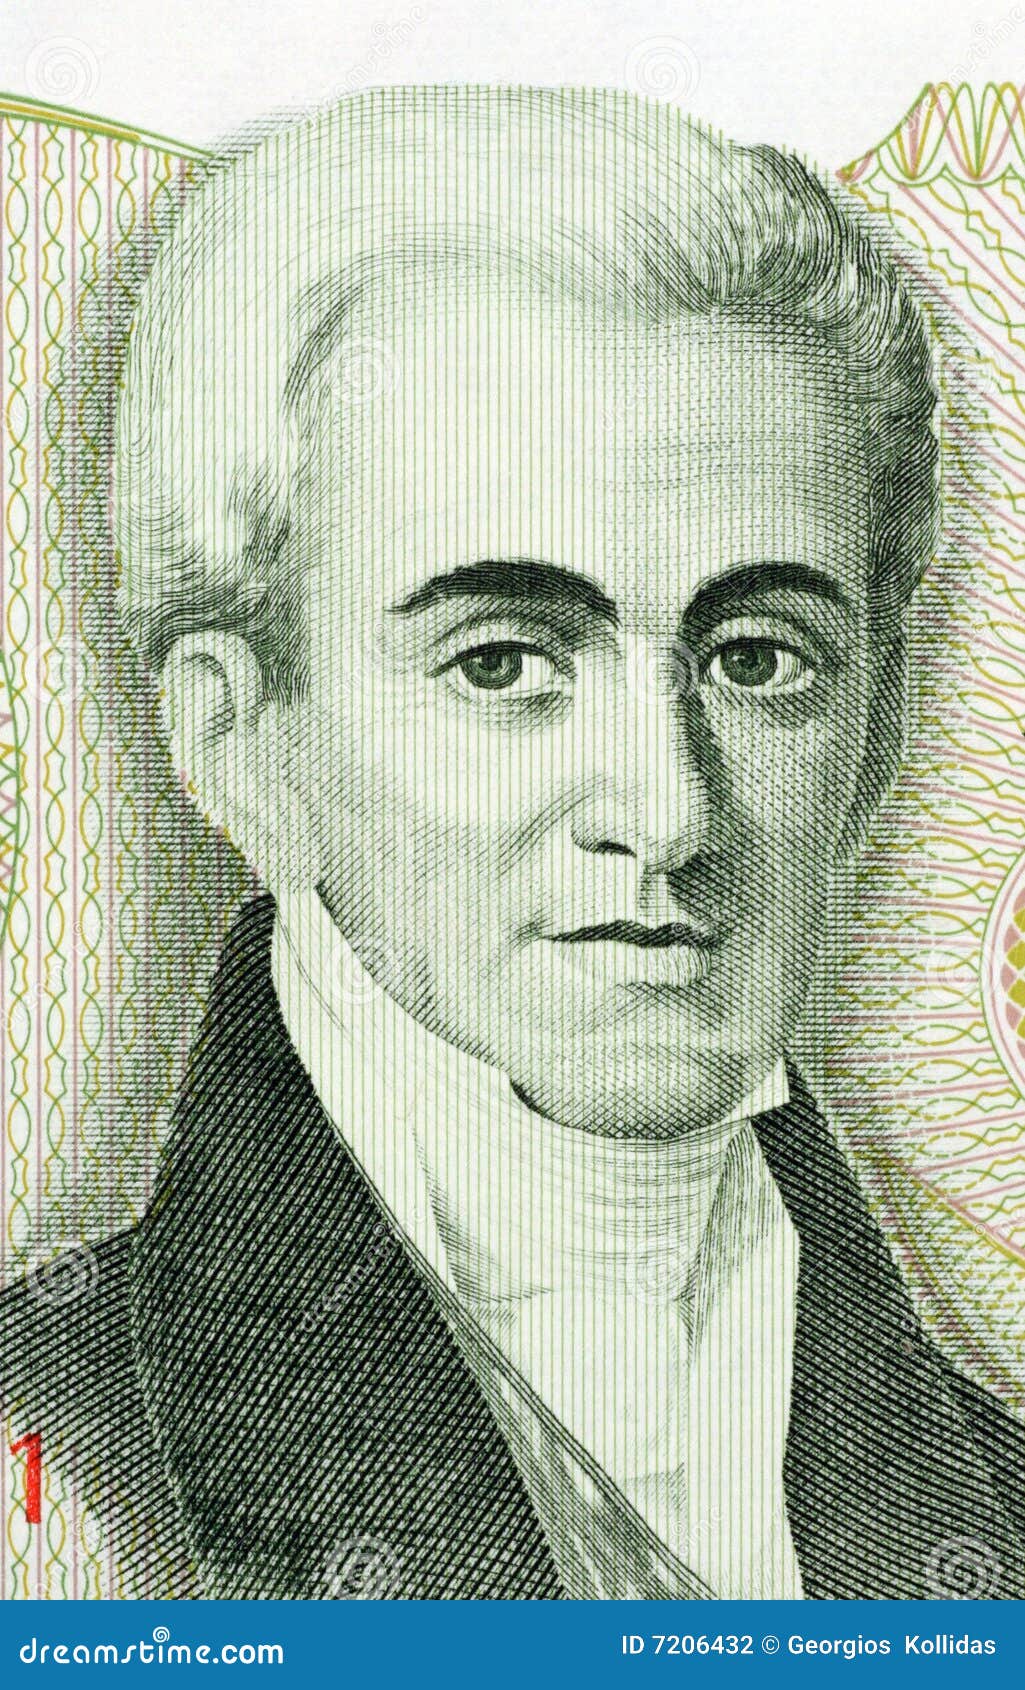 governor ioannis kapodistrias